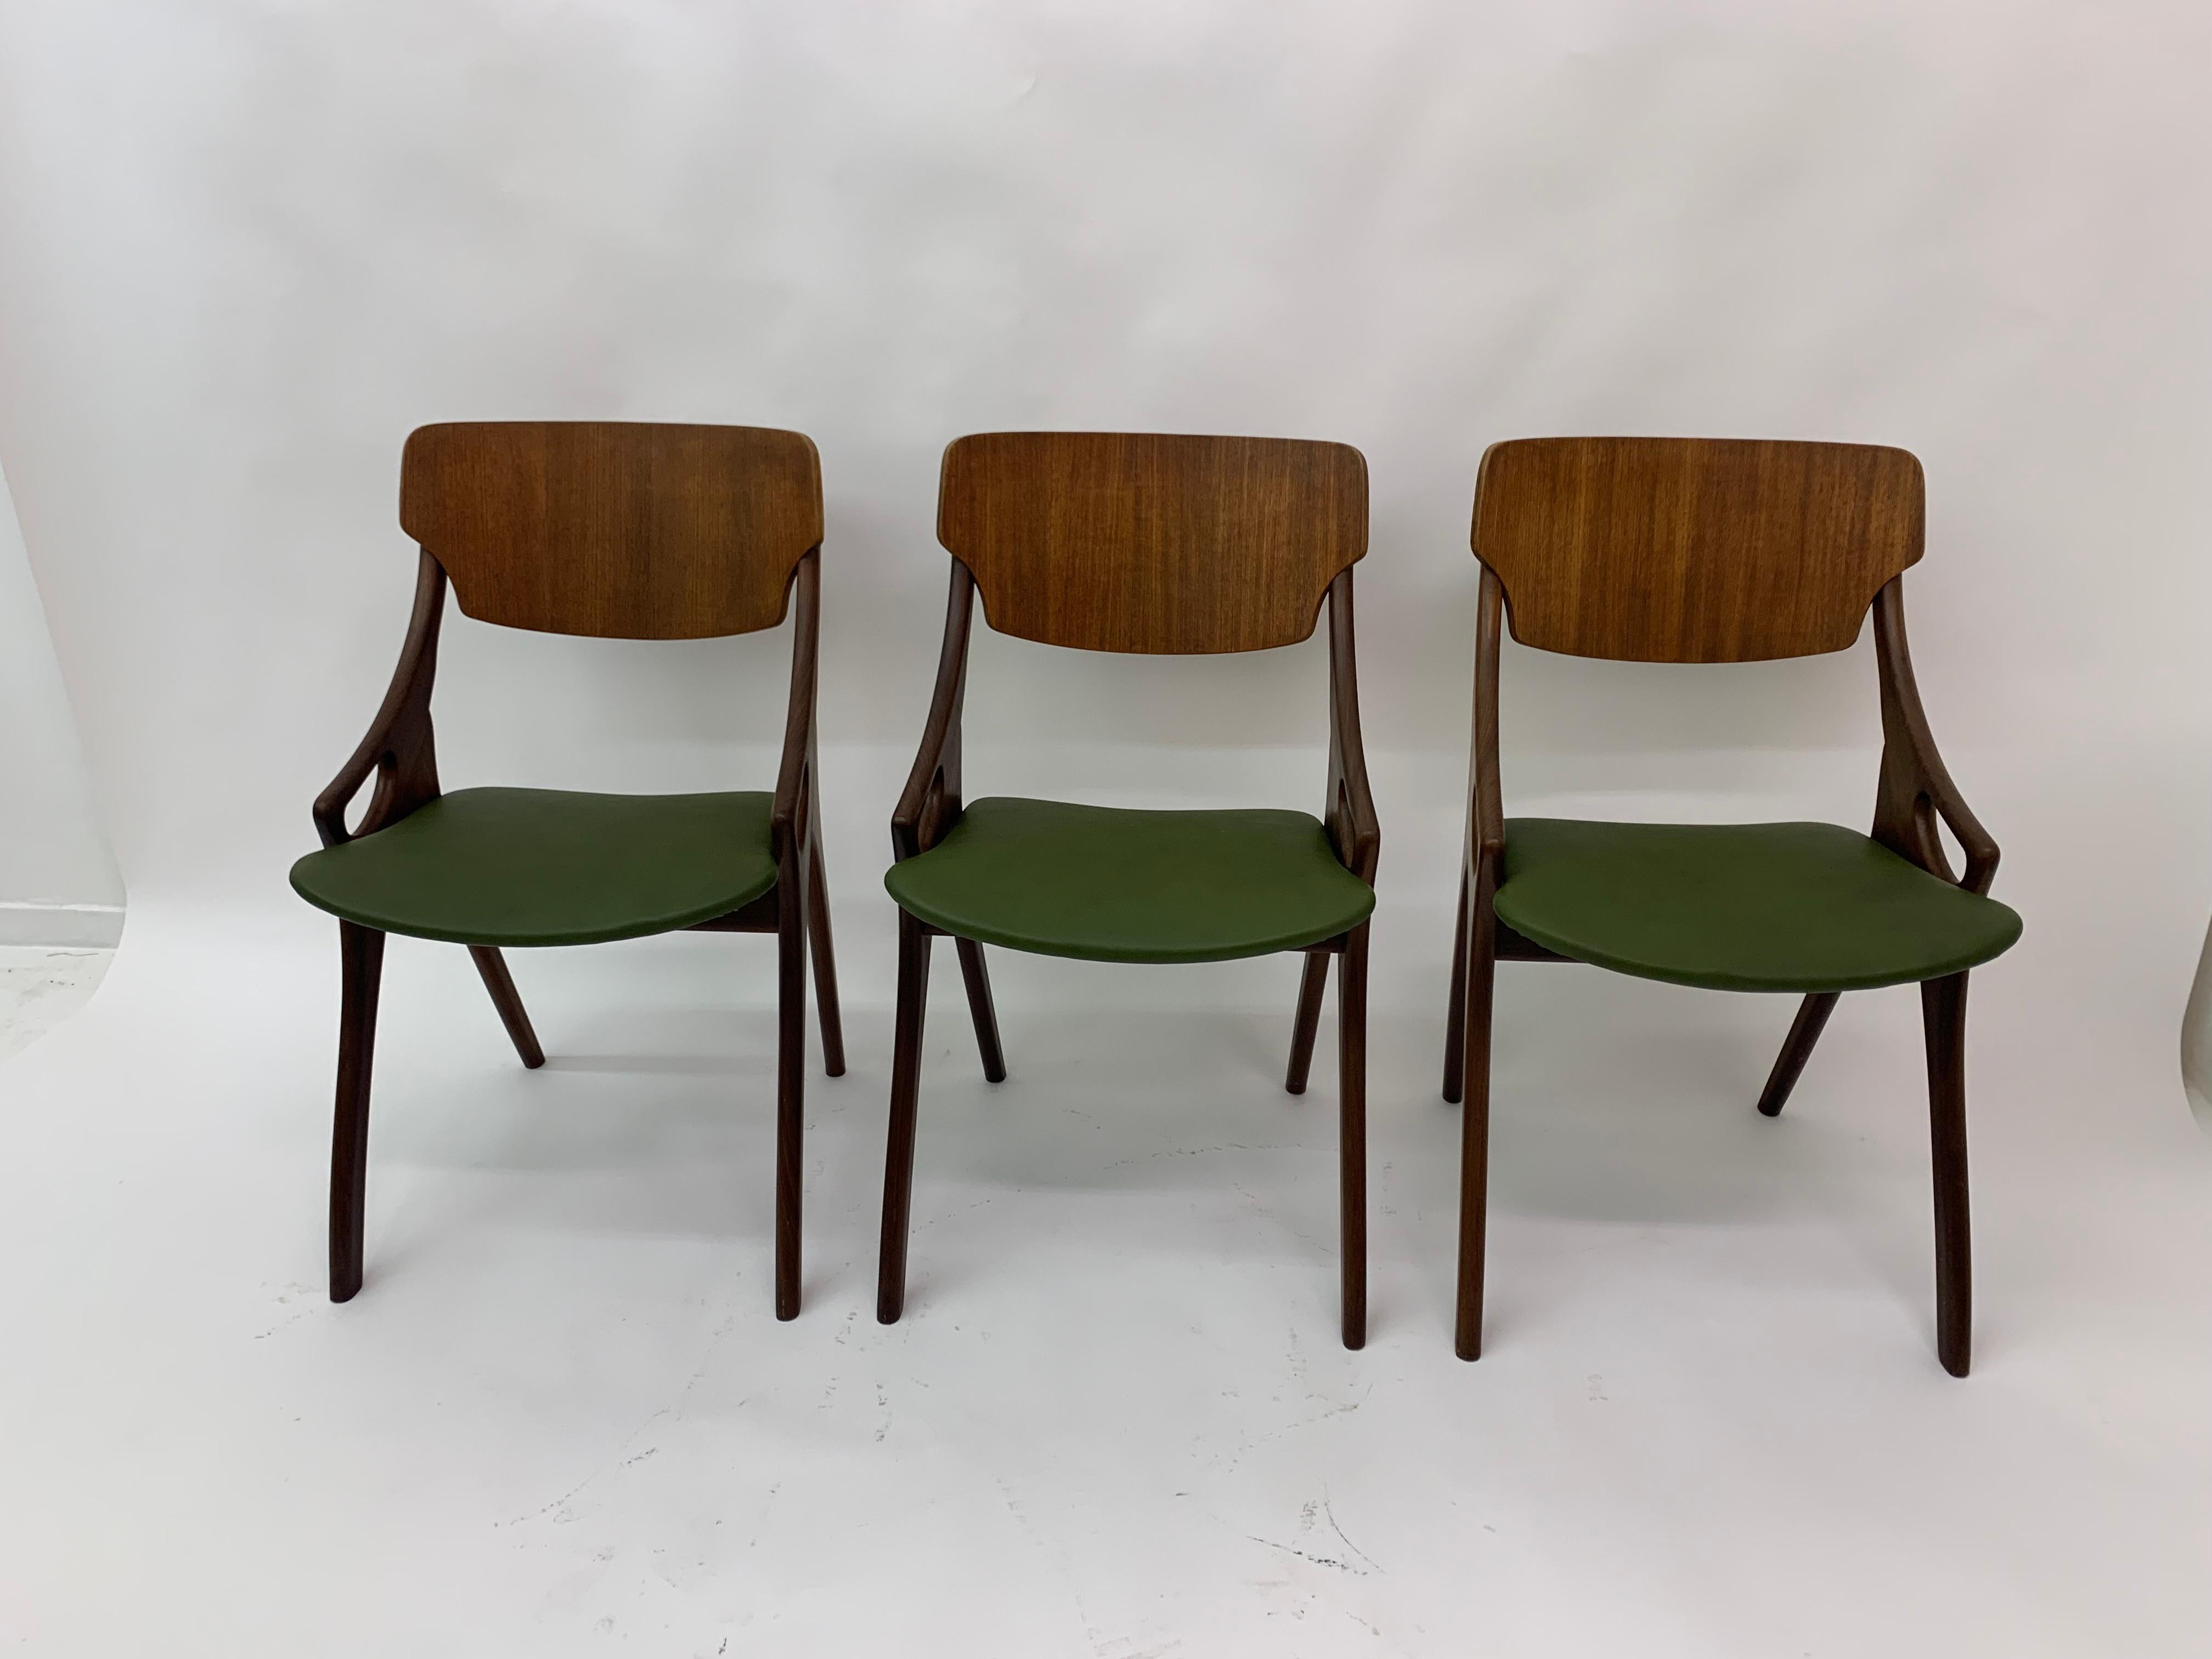 Set of 3 Danish Arne Hovmand Olsen dining chairs 1950’s.